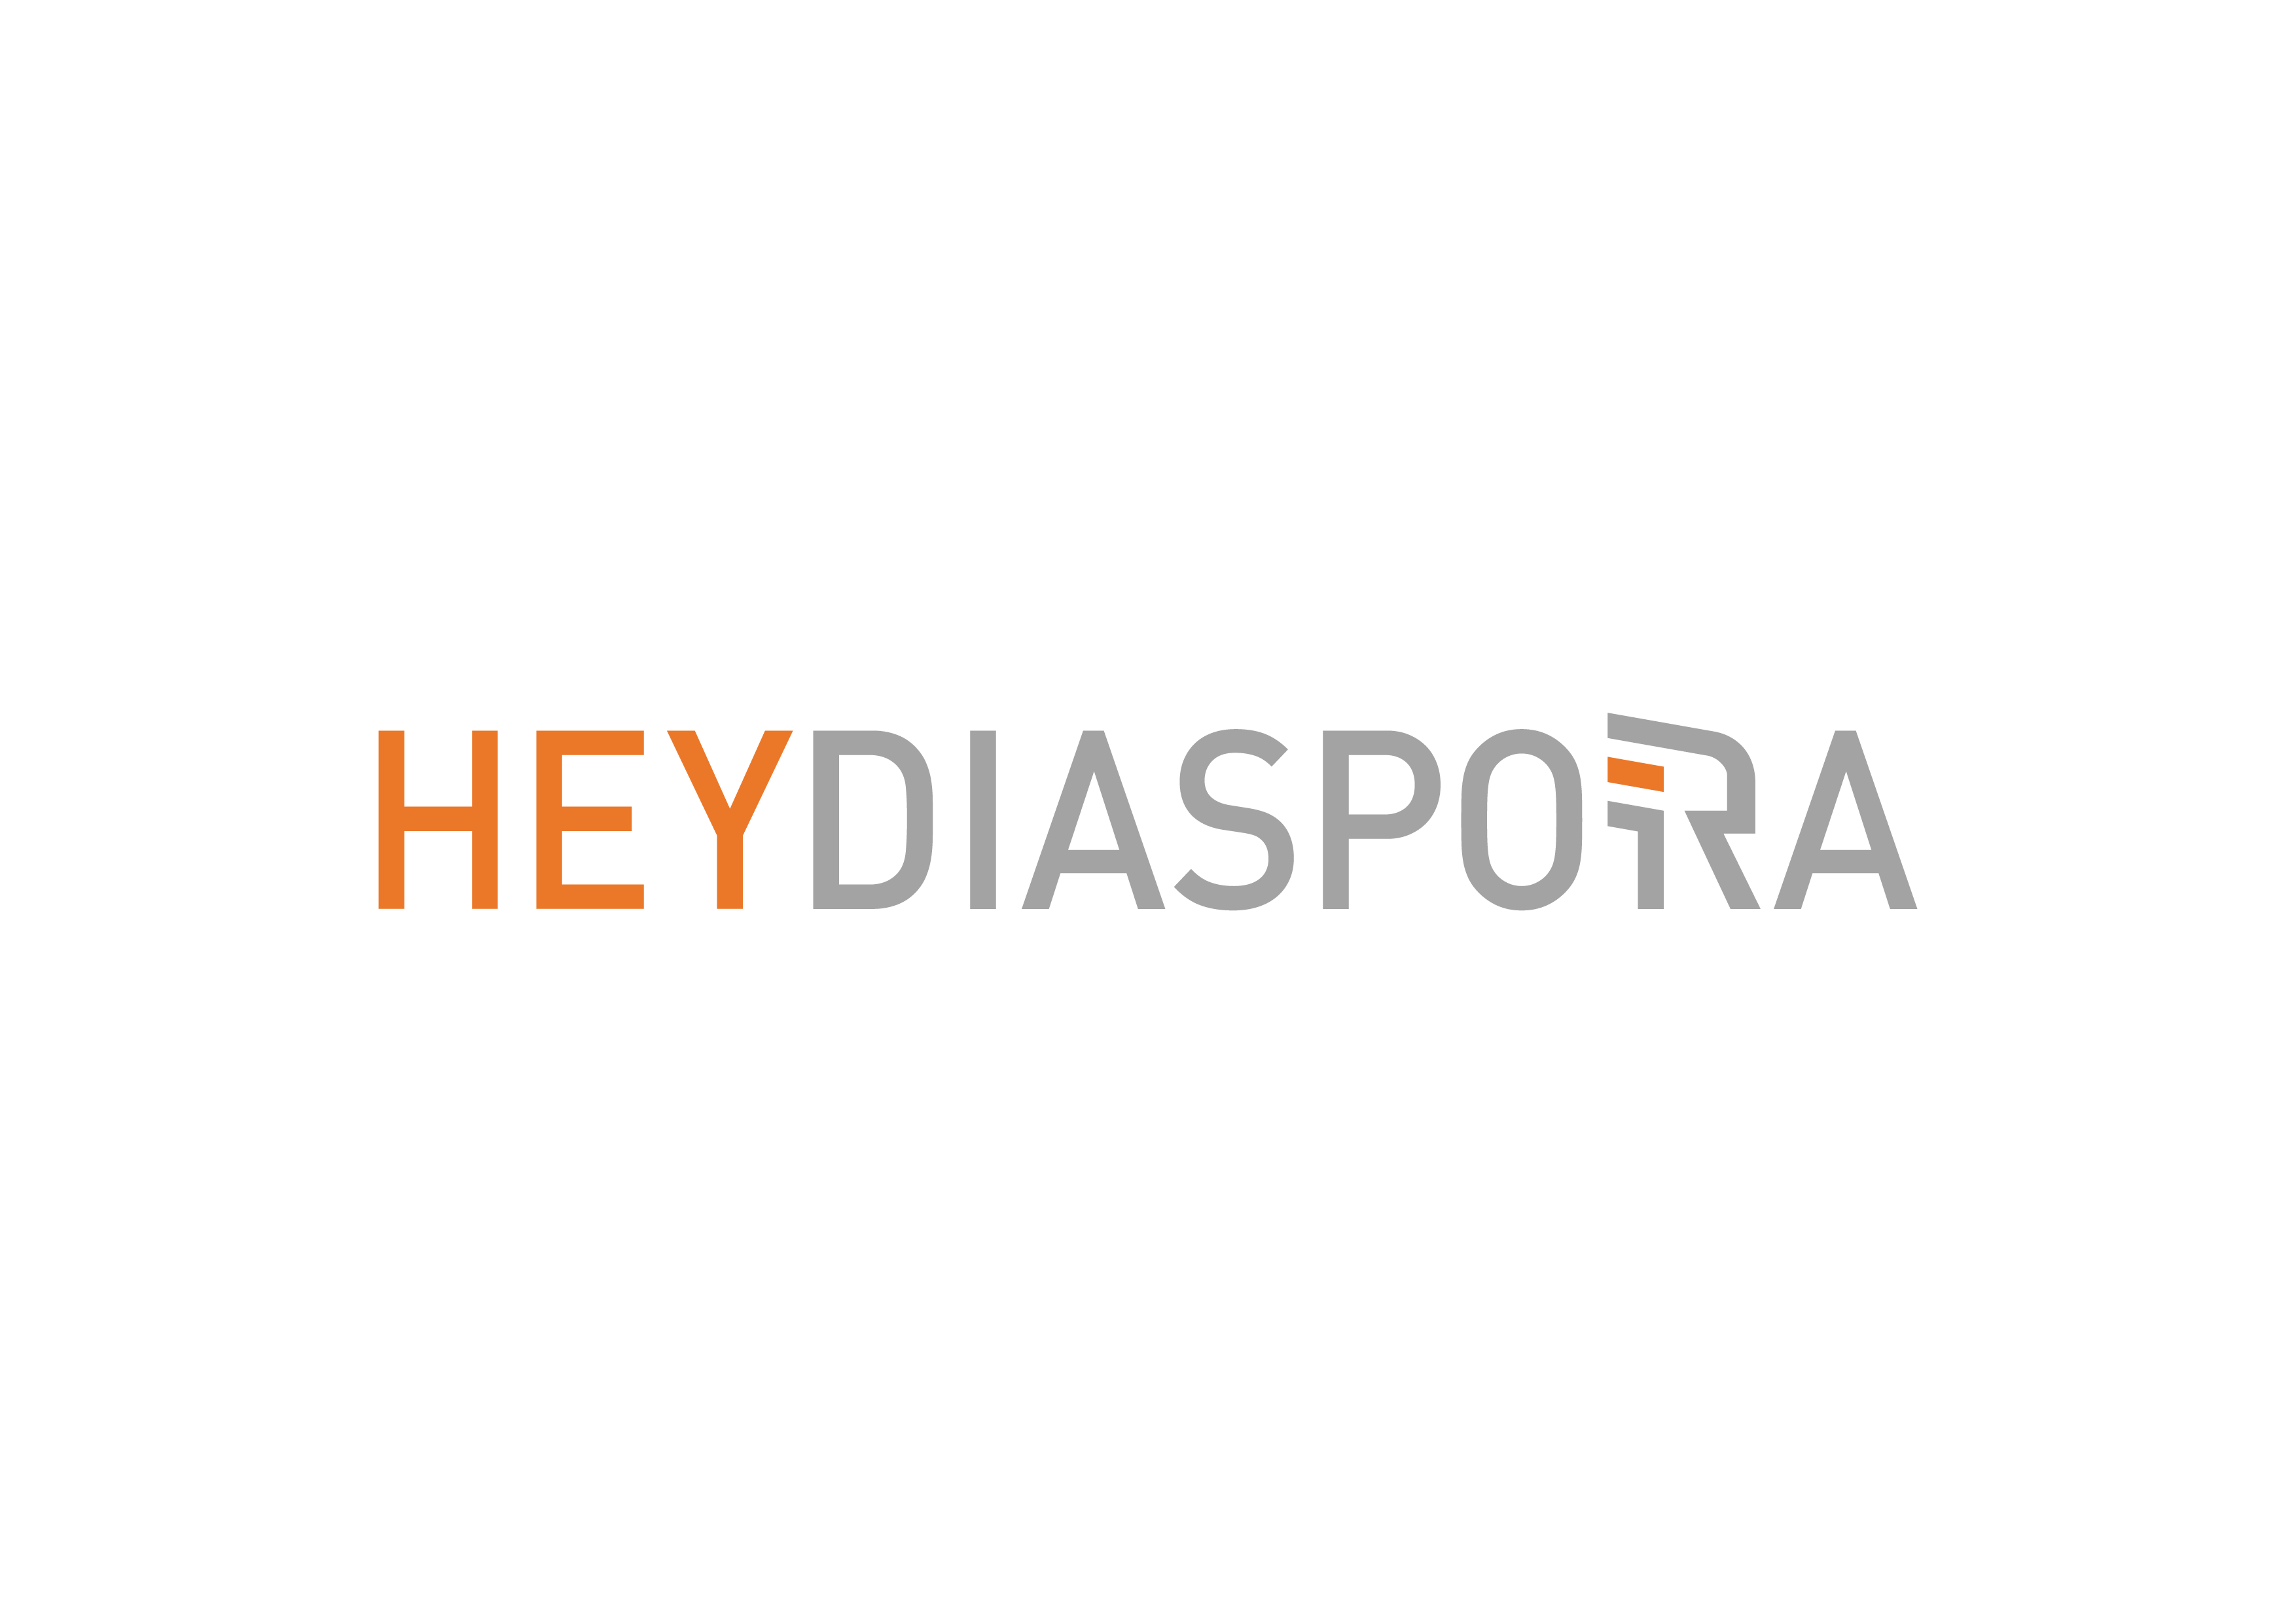 Hey Diaspora